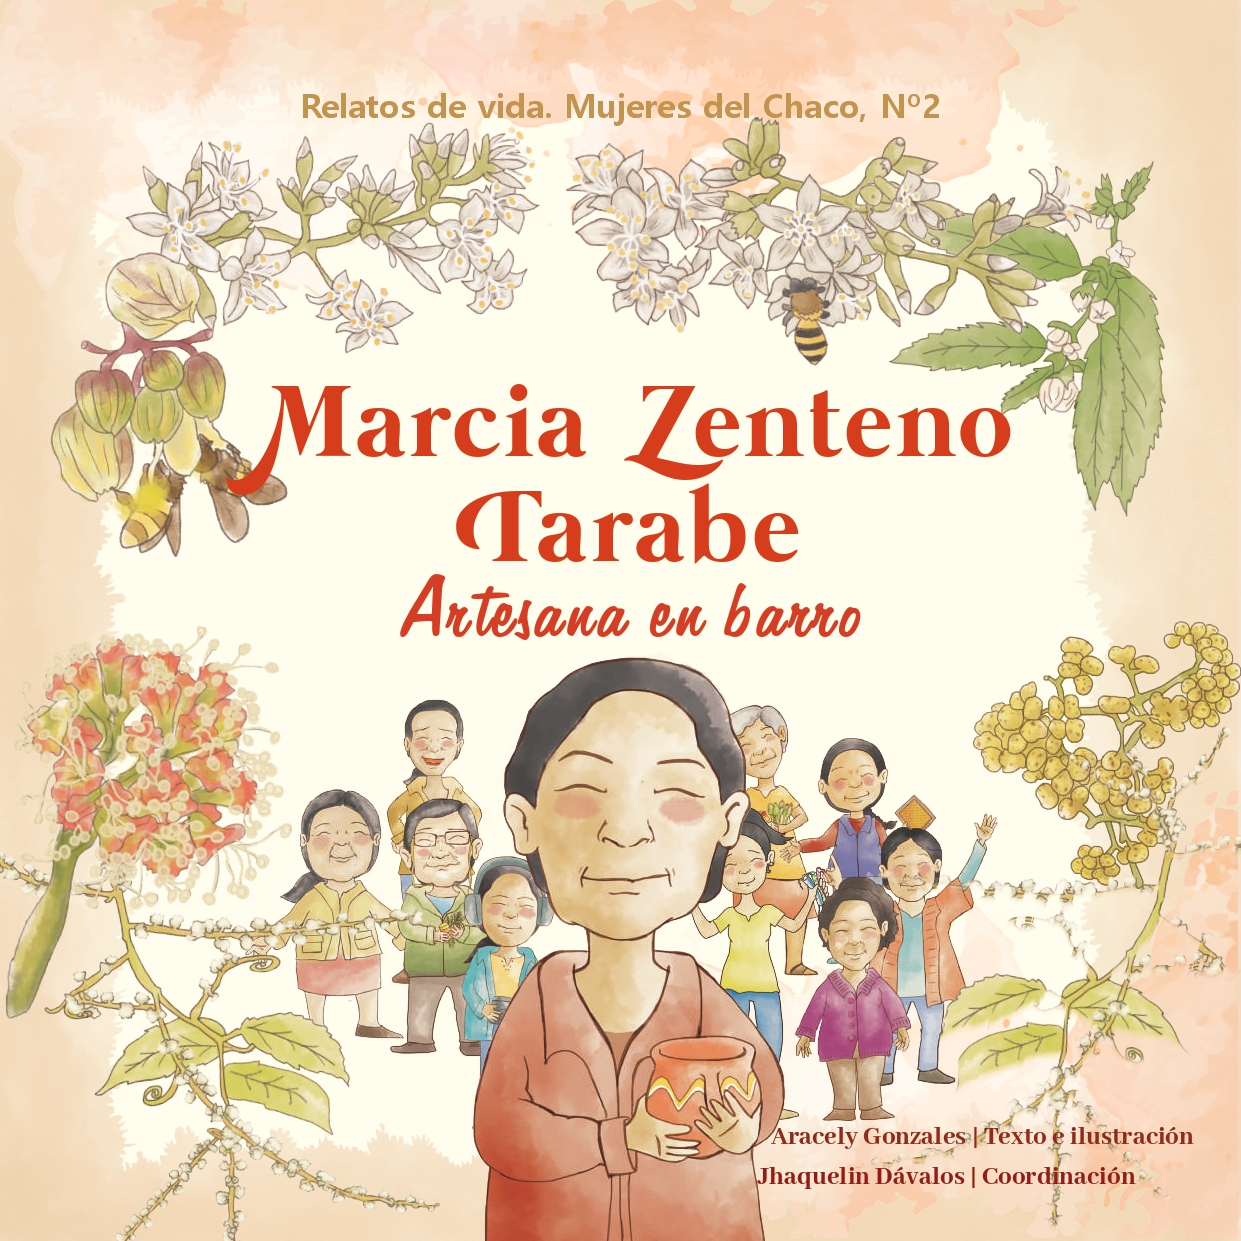 Marcia Zenteno Tarabe: artesana en barro